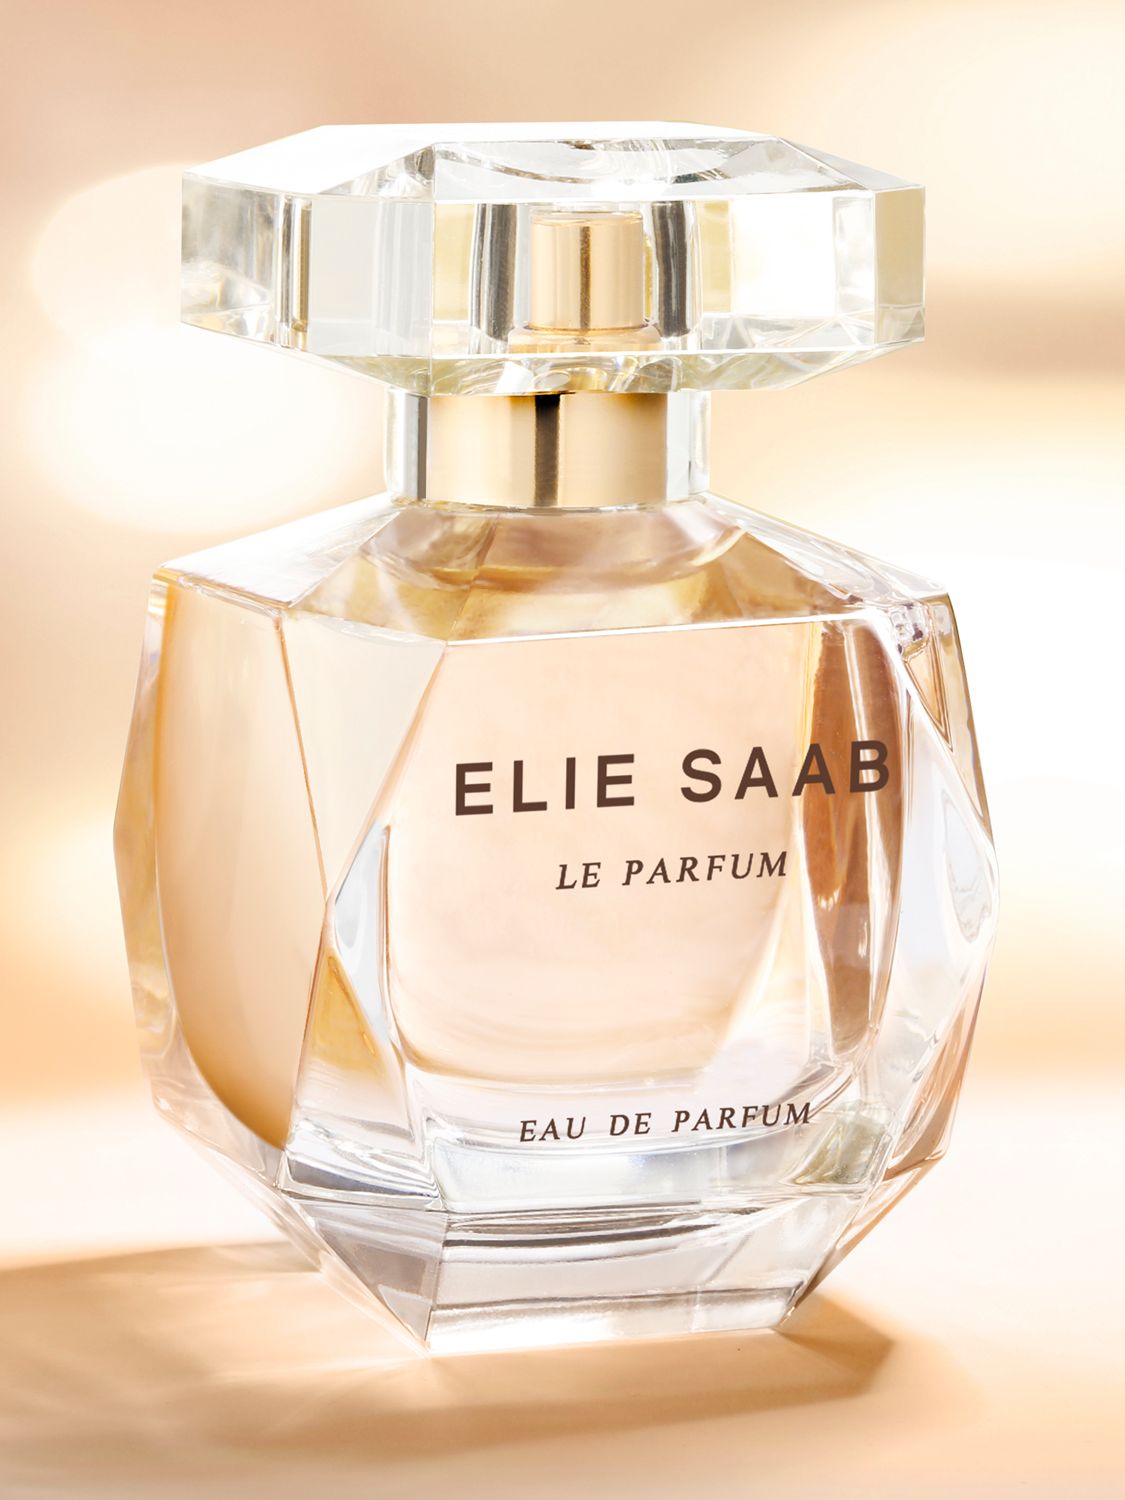 Elie Saab Le Parfum Eau de Parfum, 30ml 3